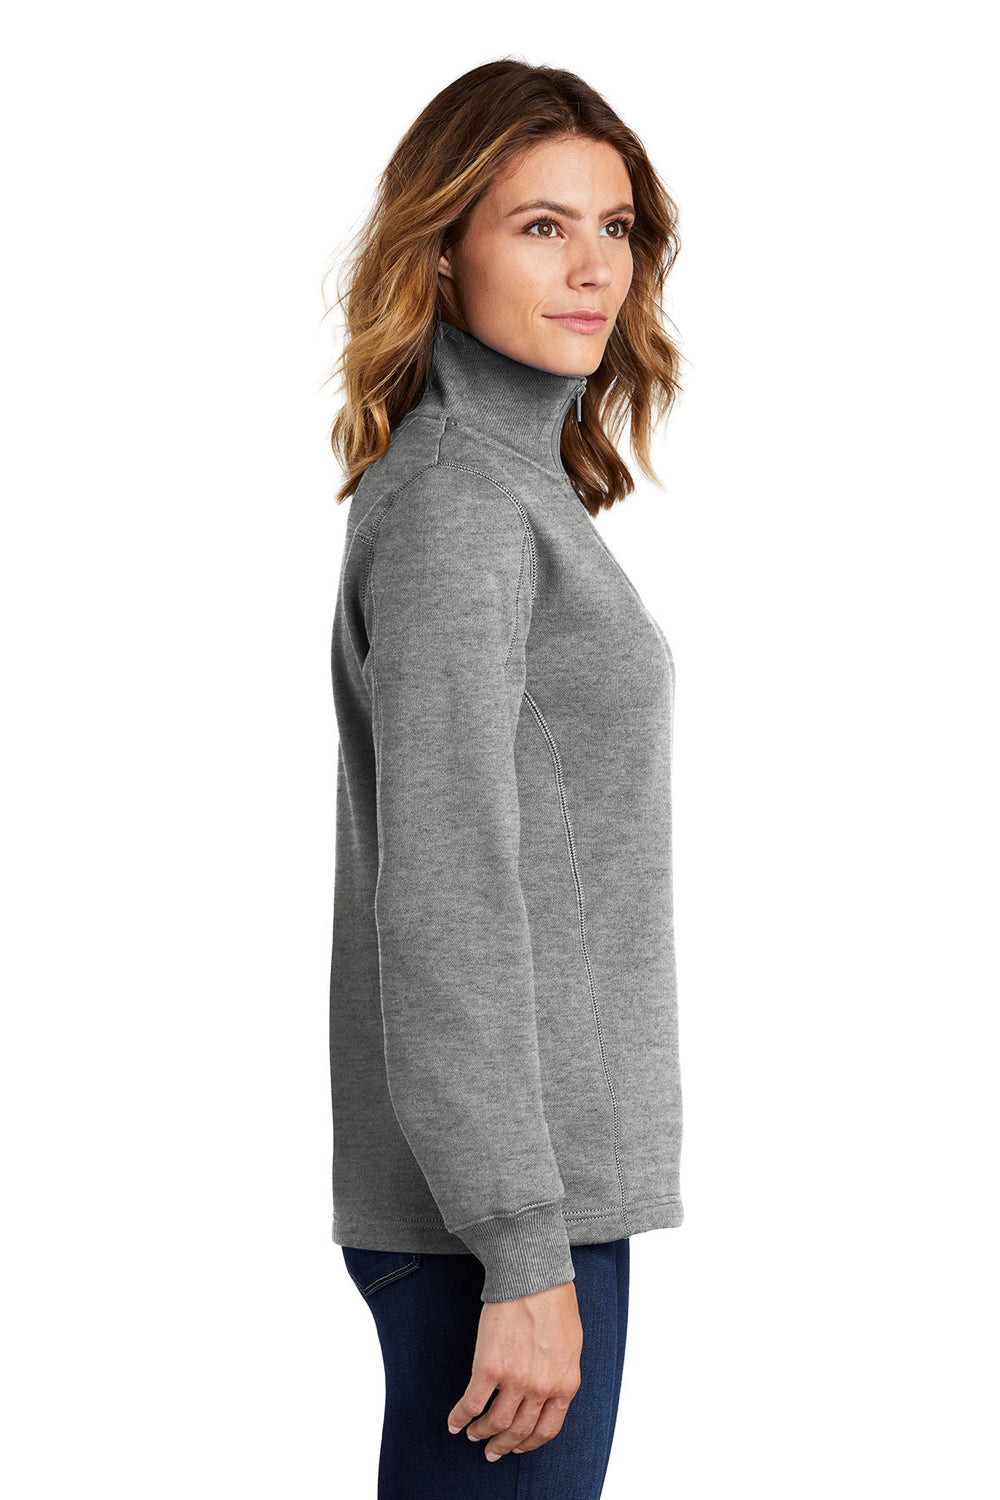 Sport-Tek LST253 Womens Fleece 1/4 Zip Sweatshirt Heather Vintage Grey Side